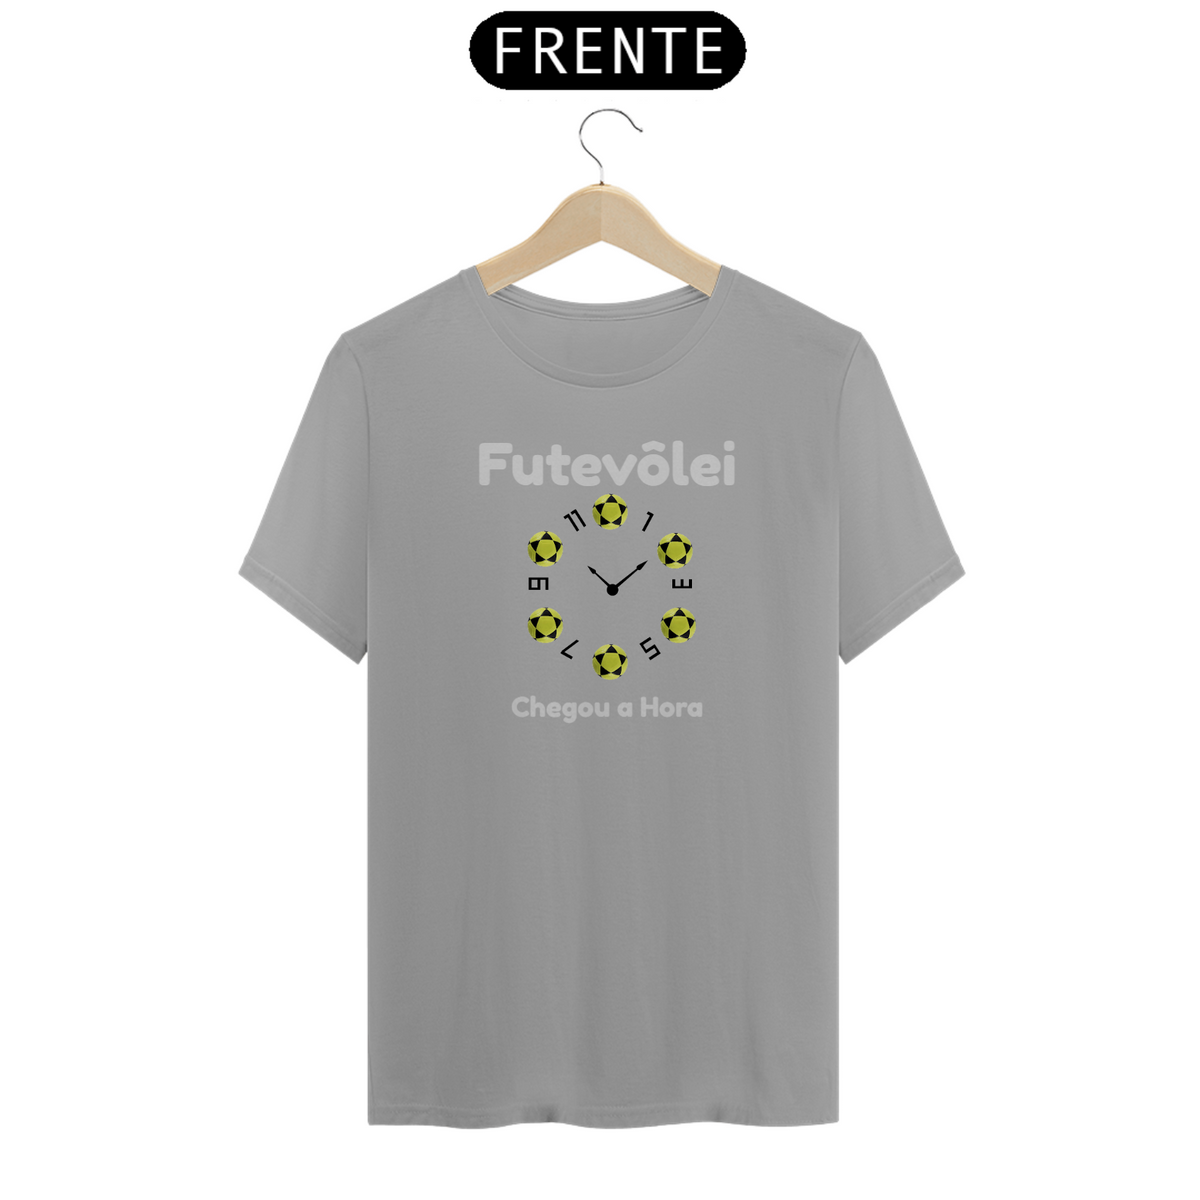 Nome do produto: T-Shirt Futevôlei 09